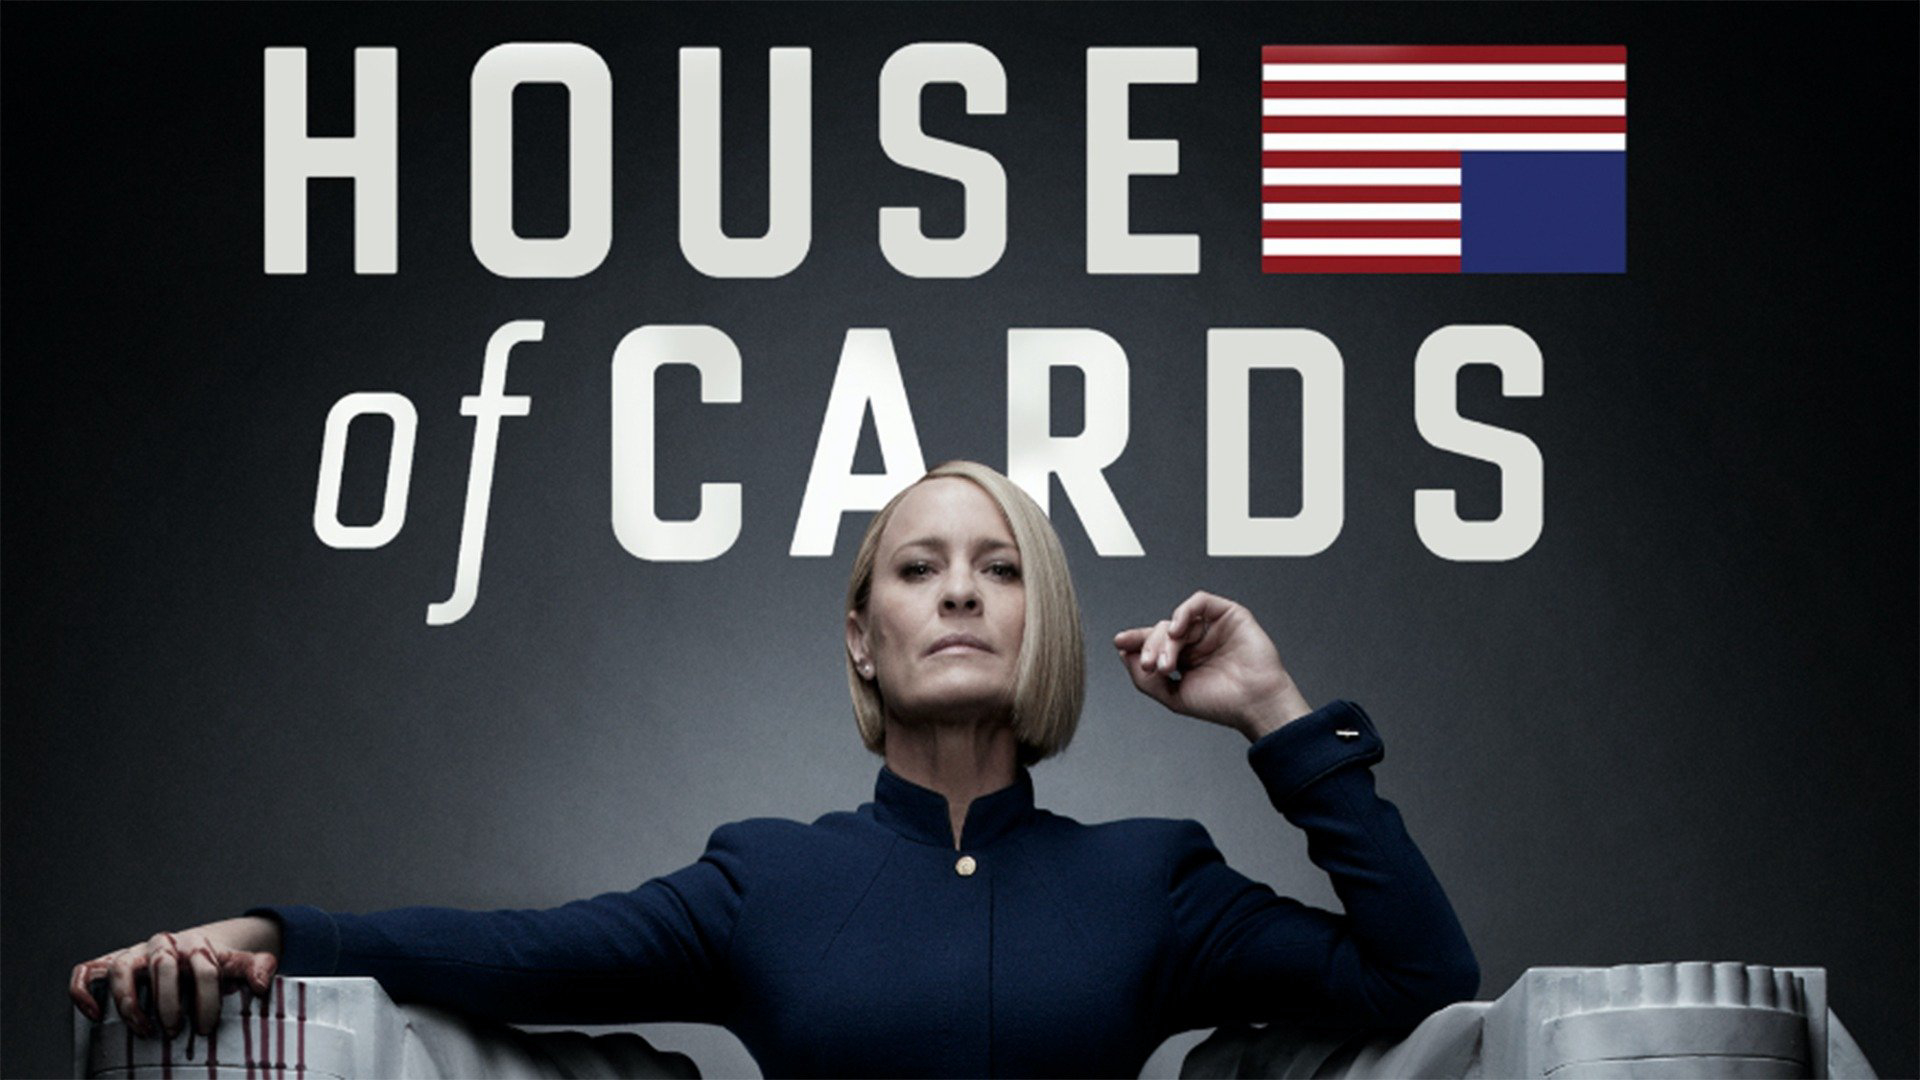 House of Cards (Season 6) / House of Cards (Season 6) (2018)